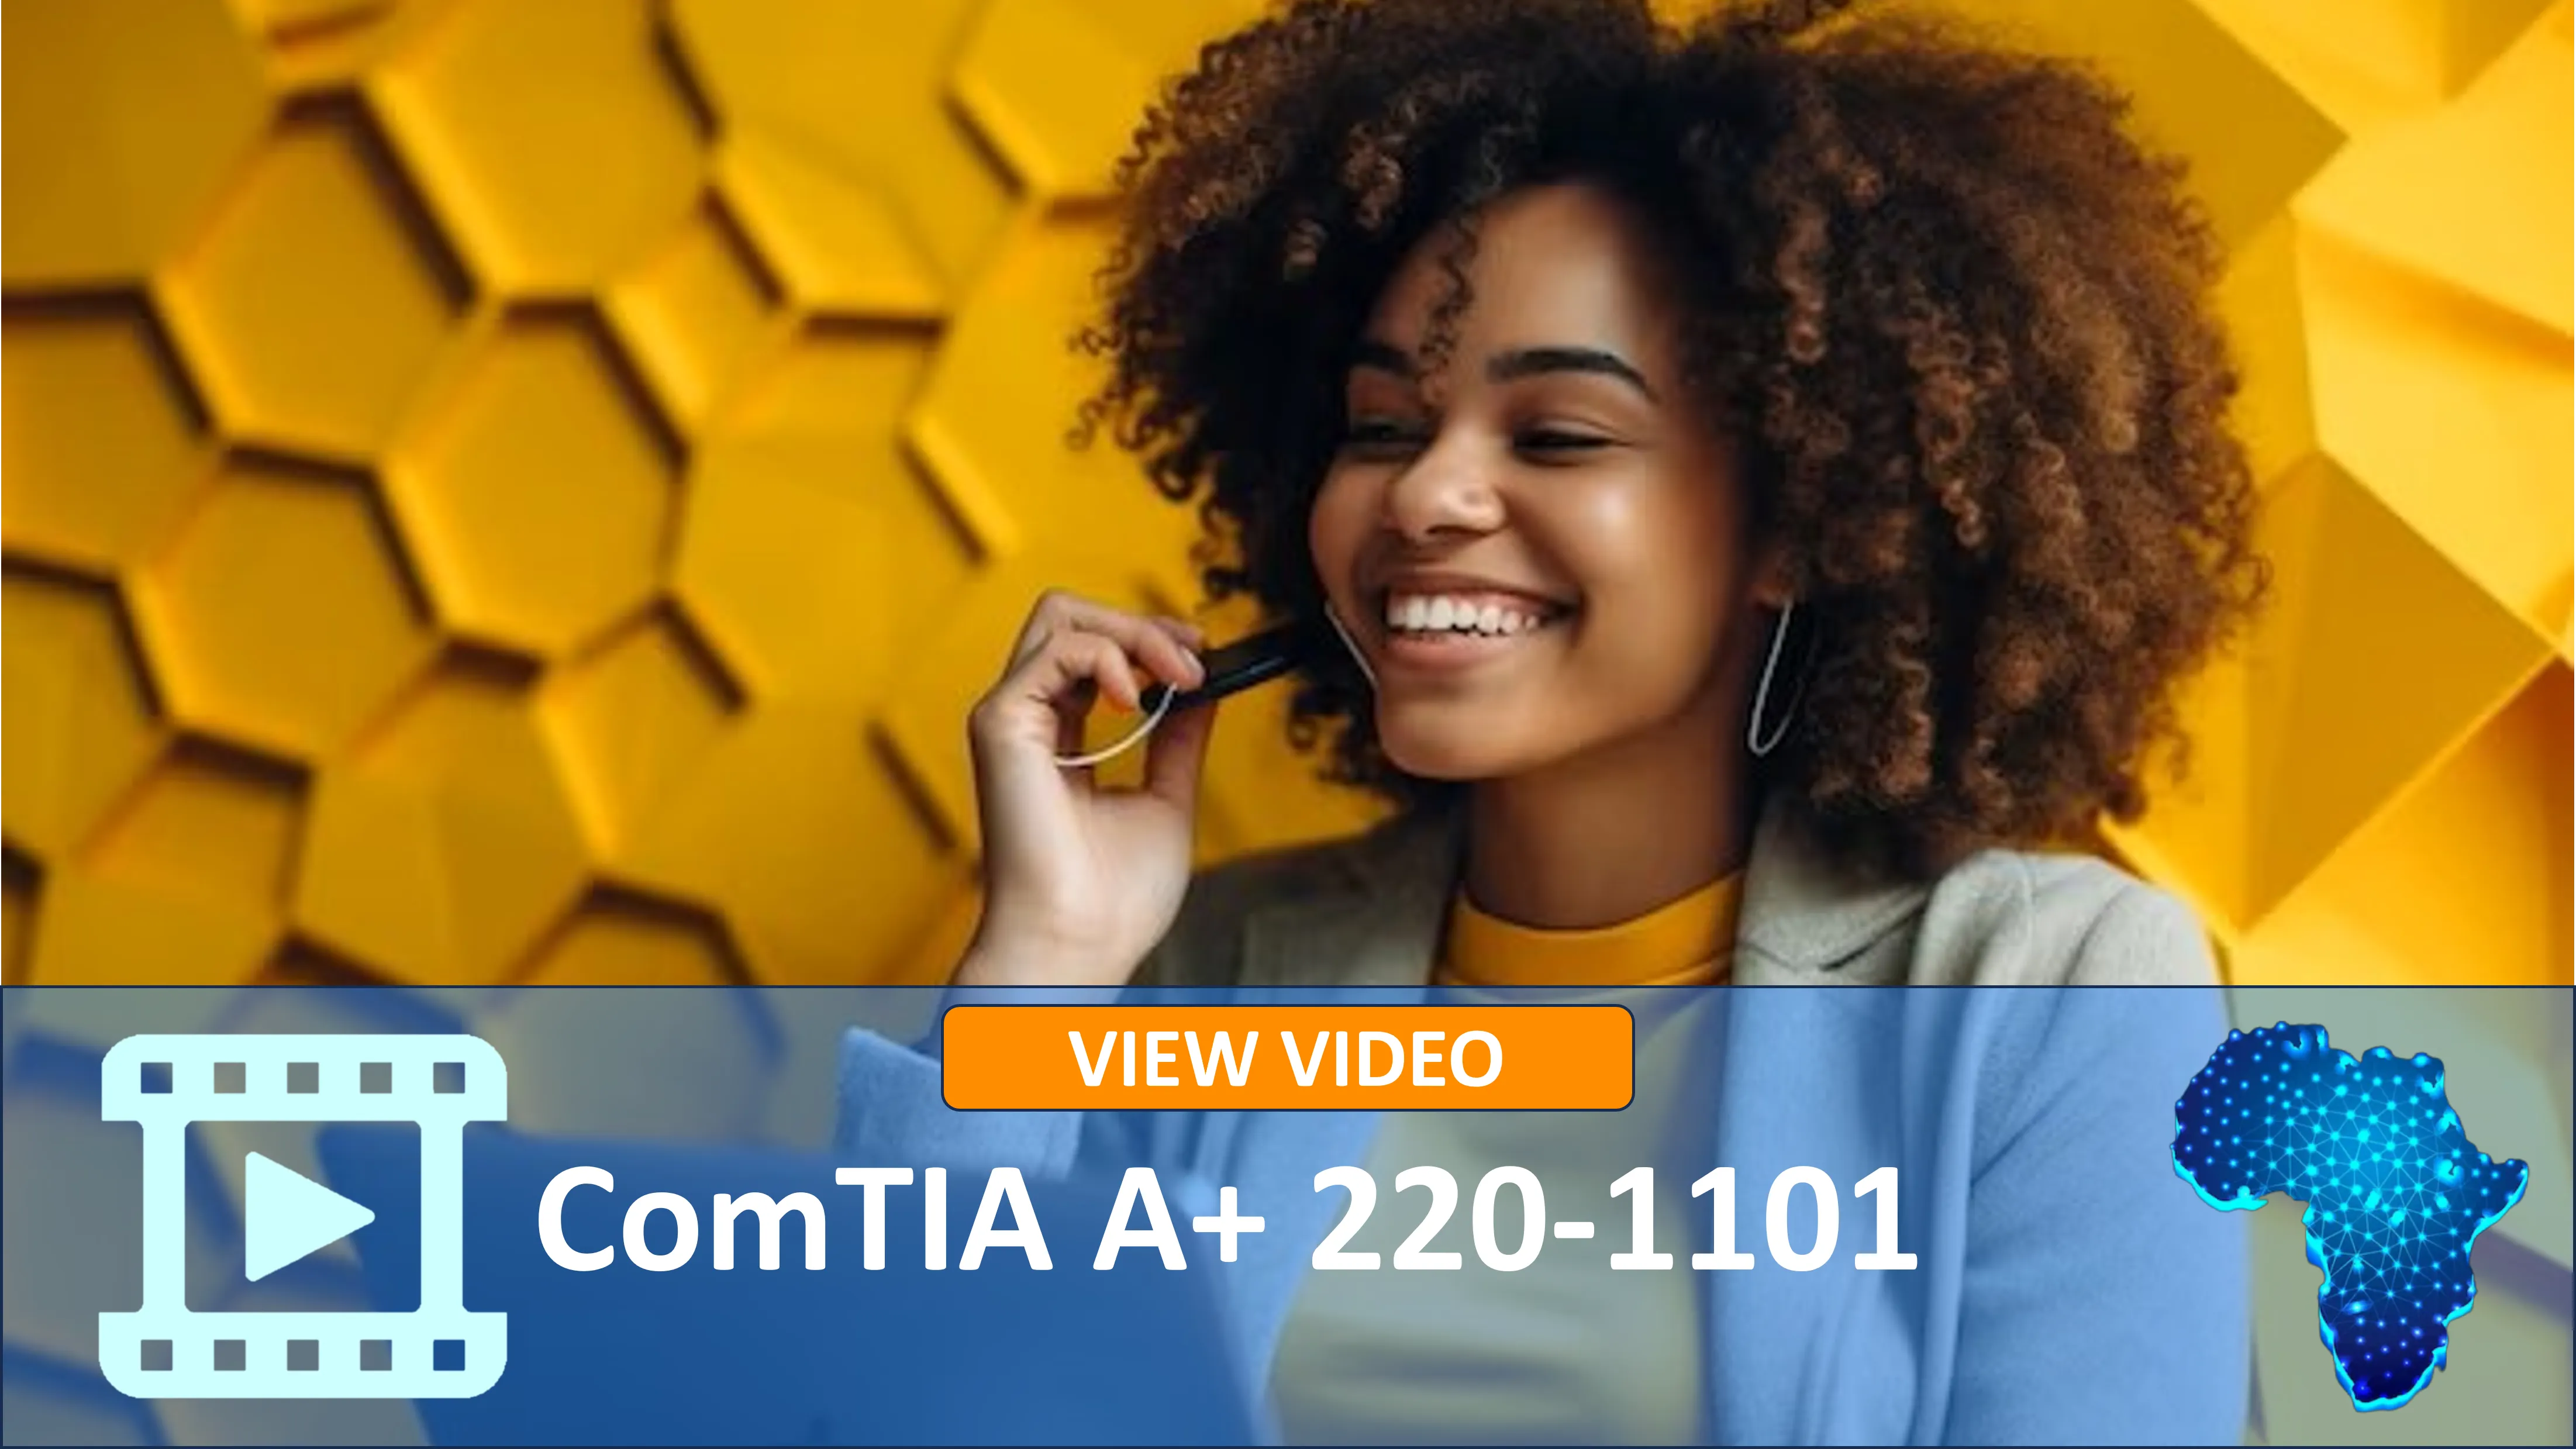 CompTIA A+ 220-1101